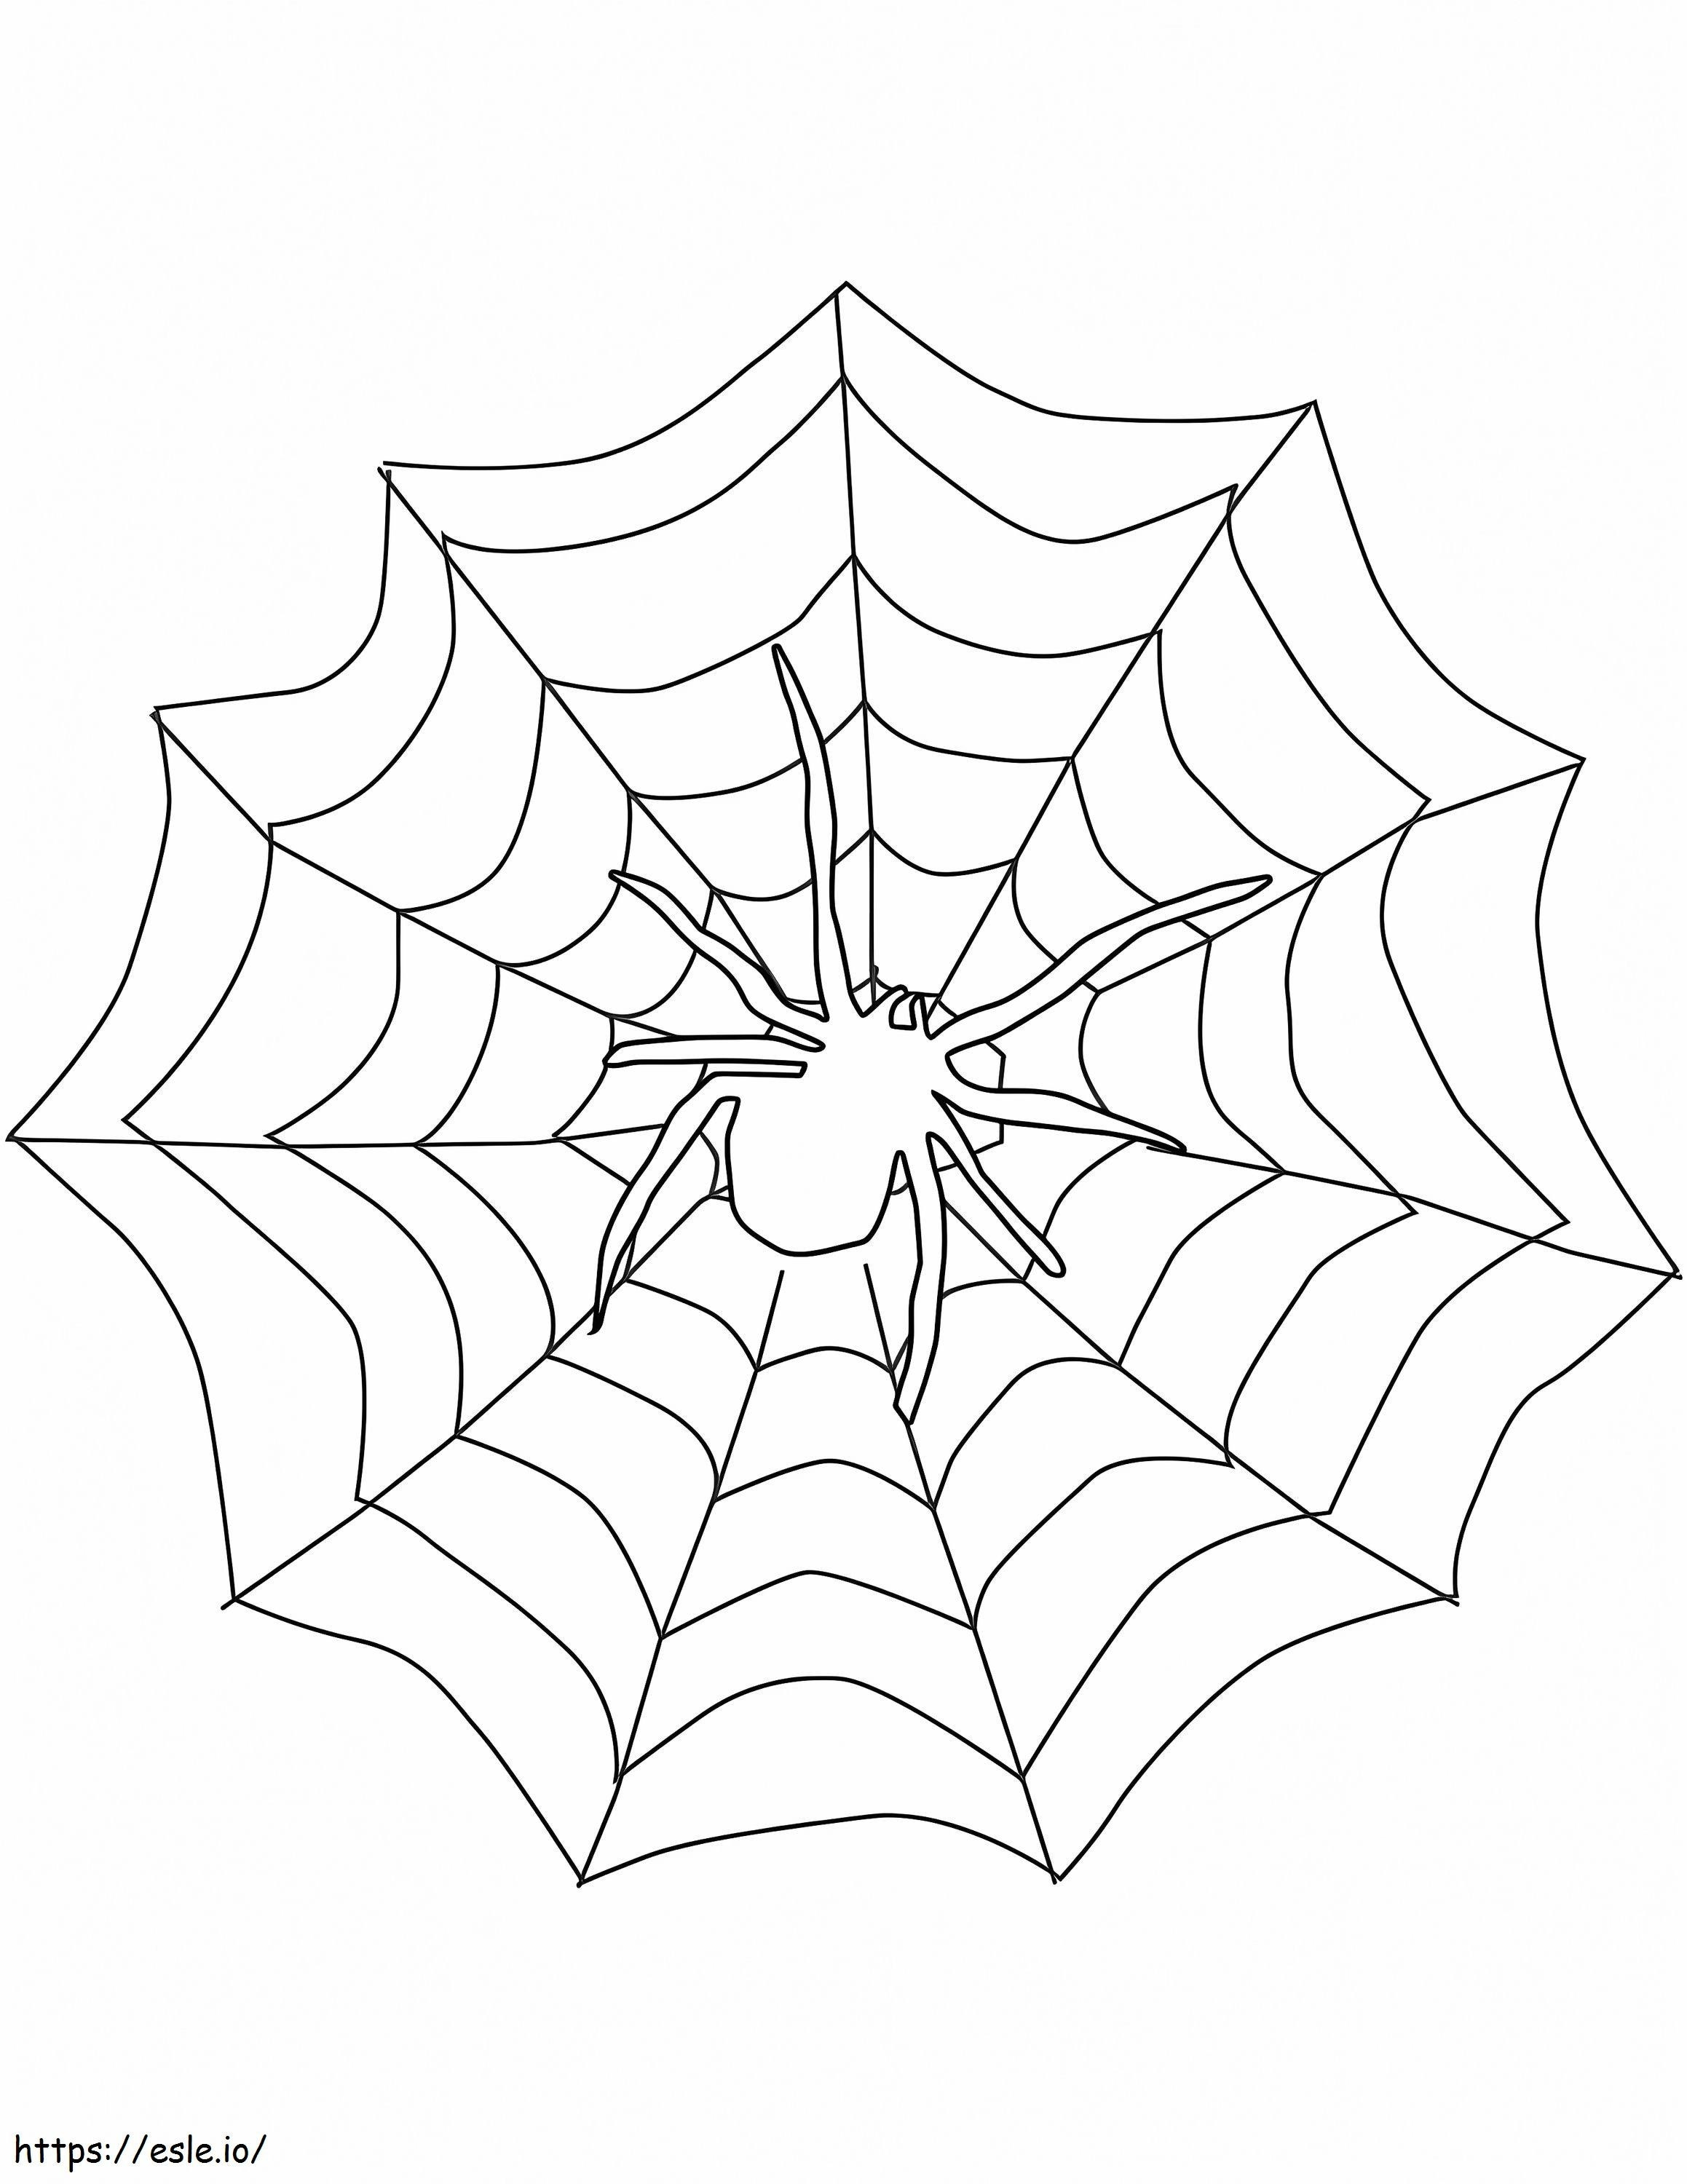 Erittäin helppo hämähäkki värityskuva